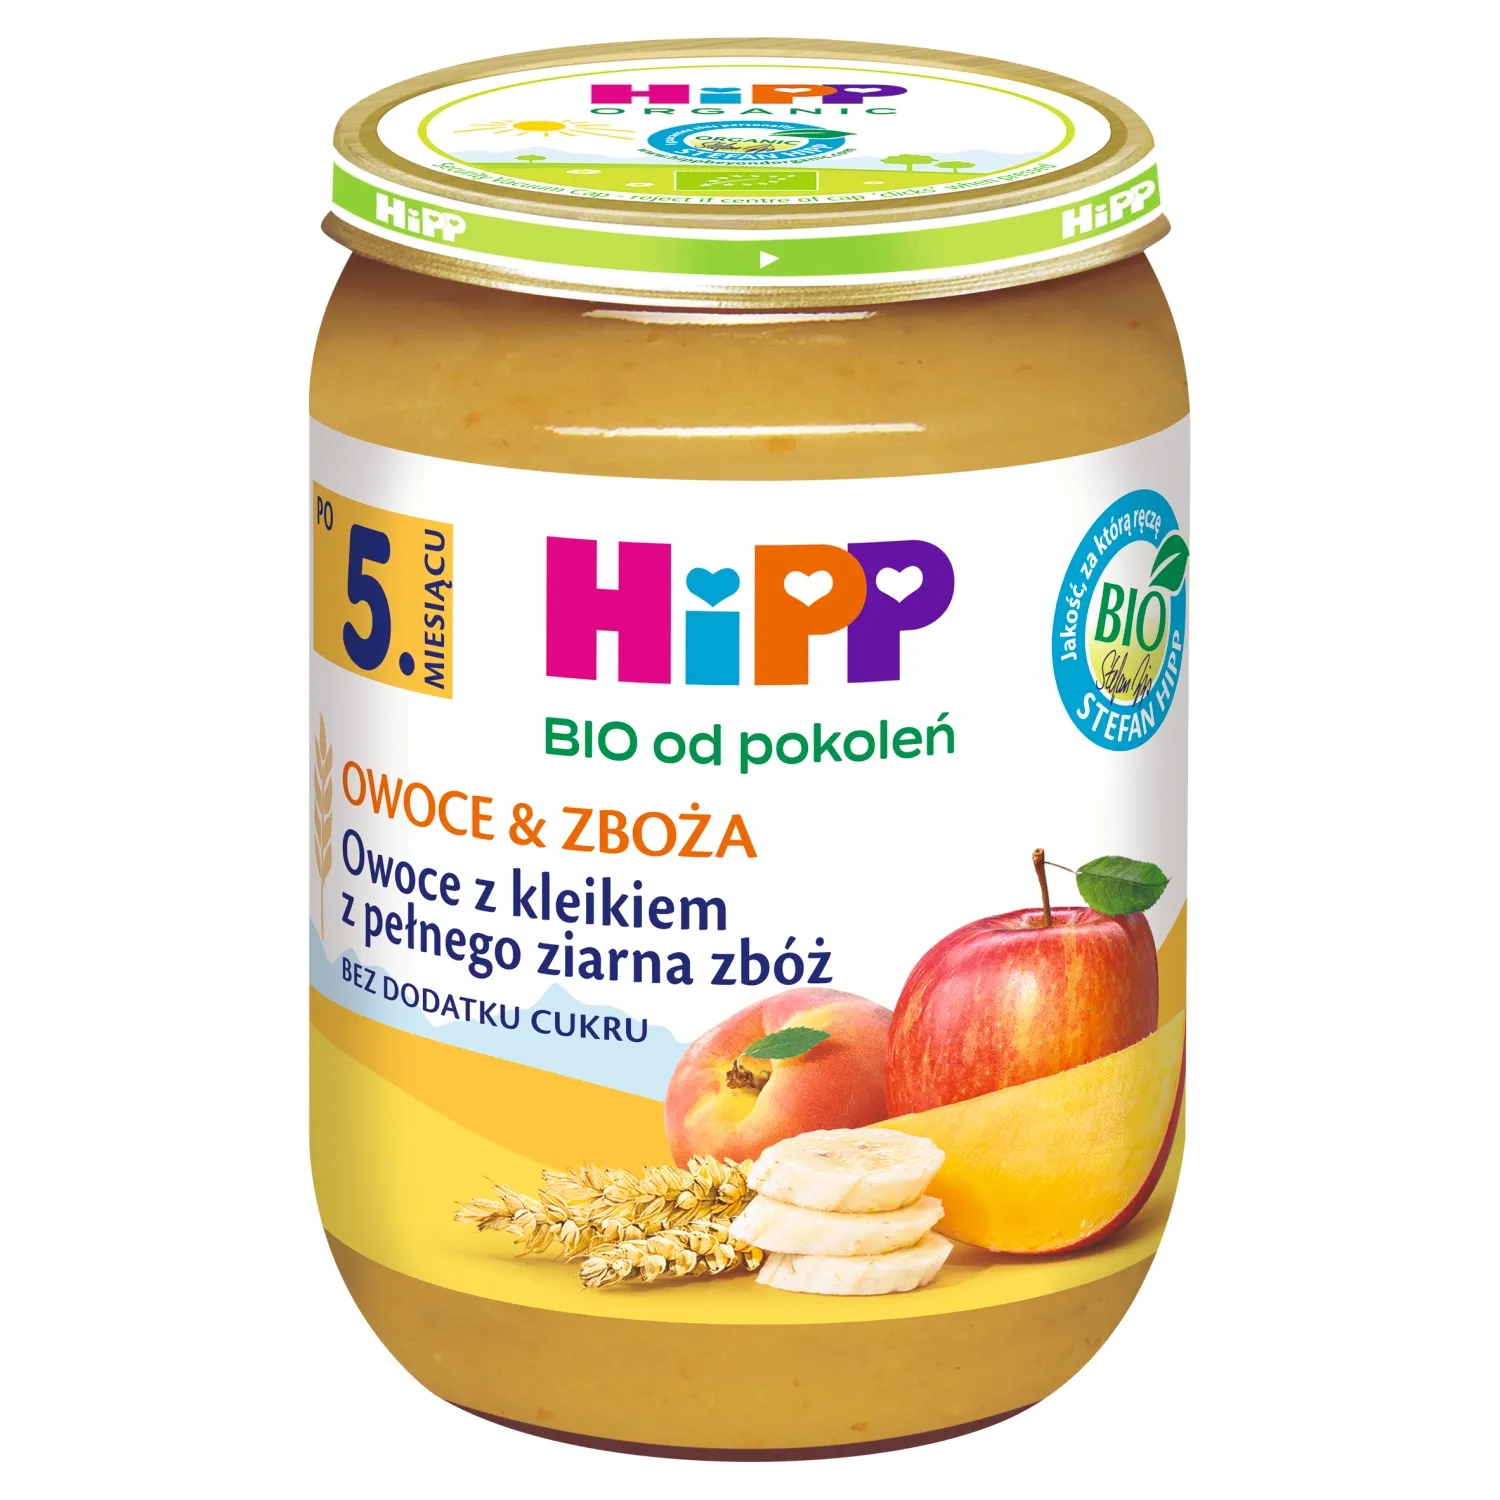 HiPP BIO od pokoleń Owoce z kleikiem z pełnego ziarna zbóż po 5. miesiącu, 190 g